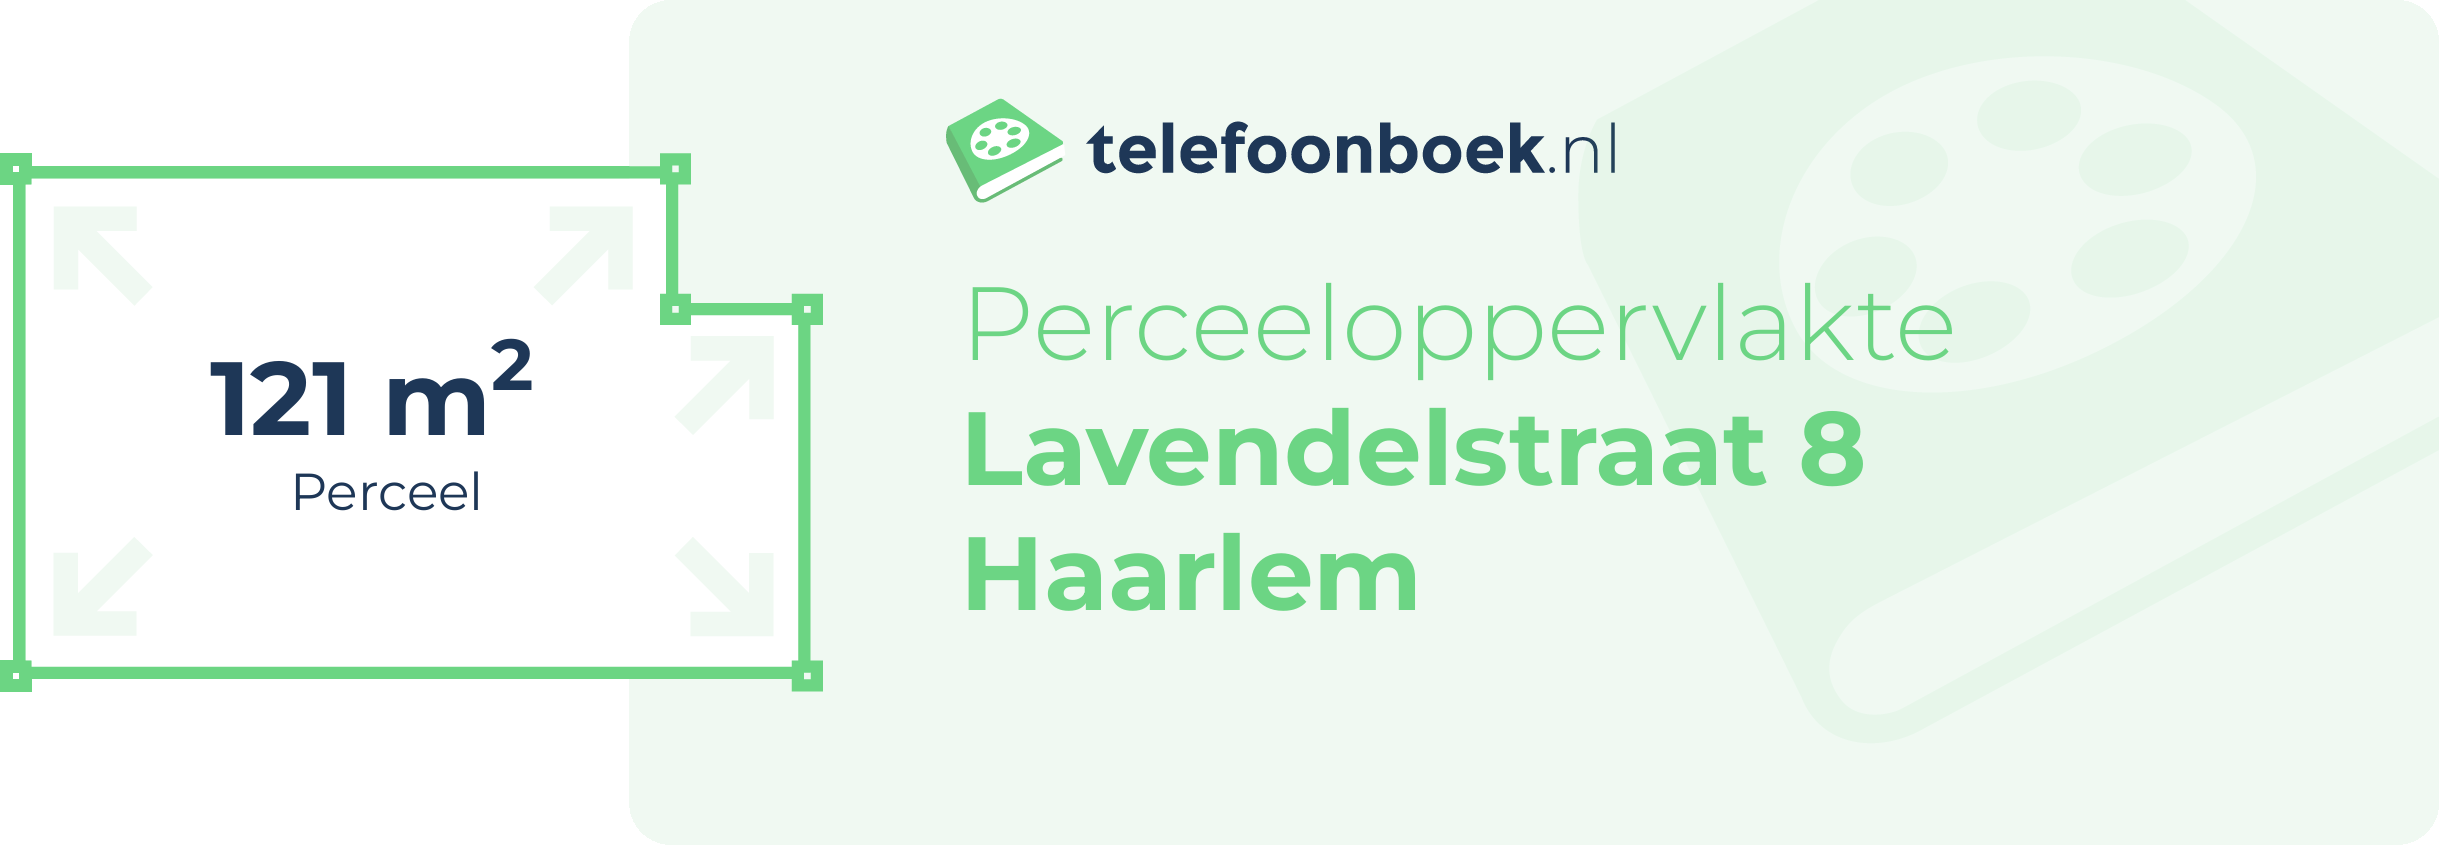 Perceeloppervlakte Lavendelstraat 8 Haarlem